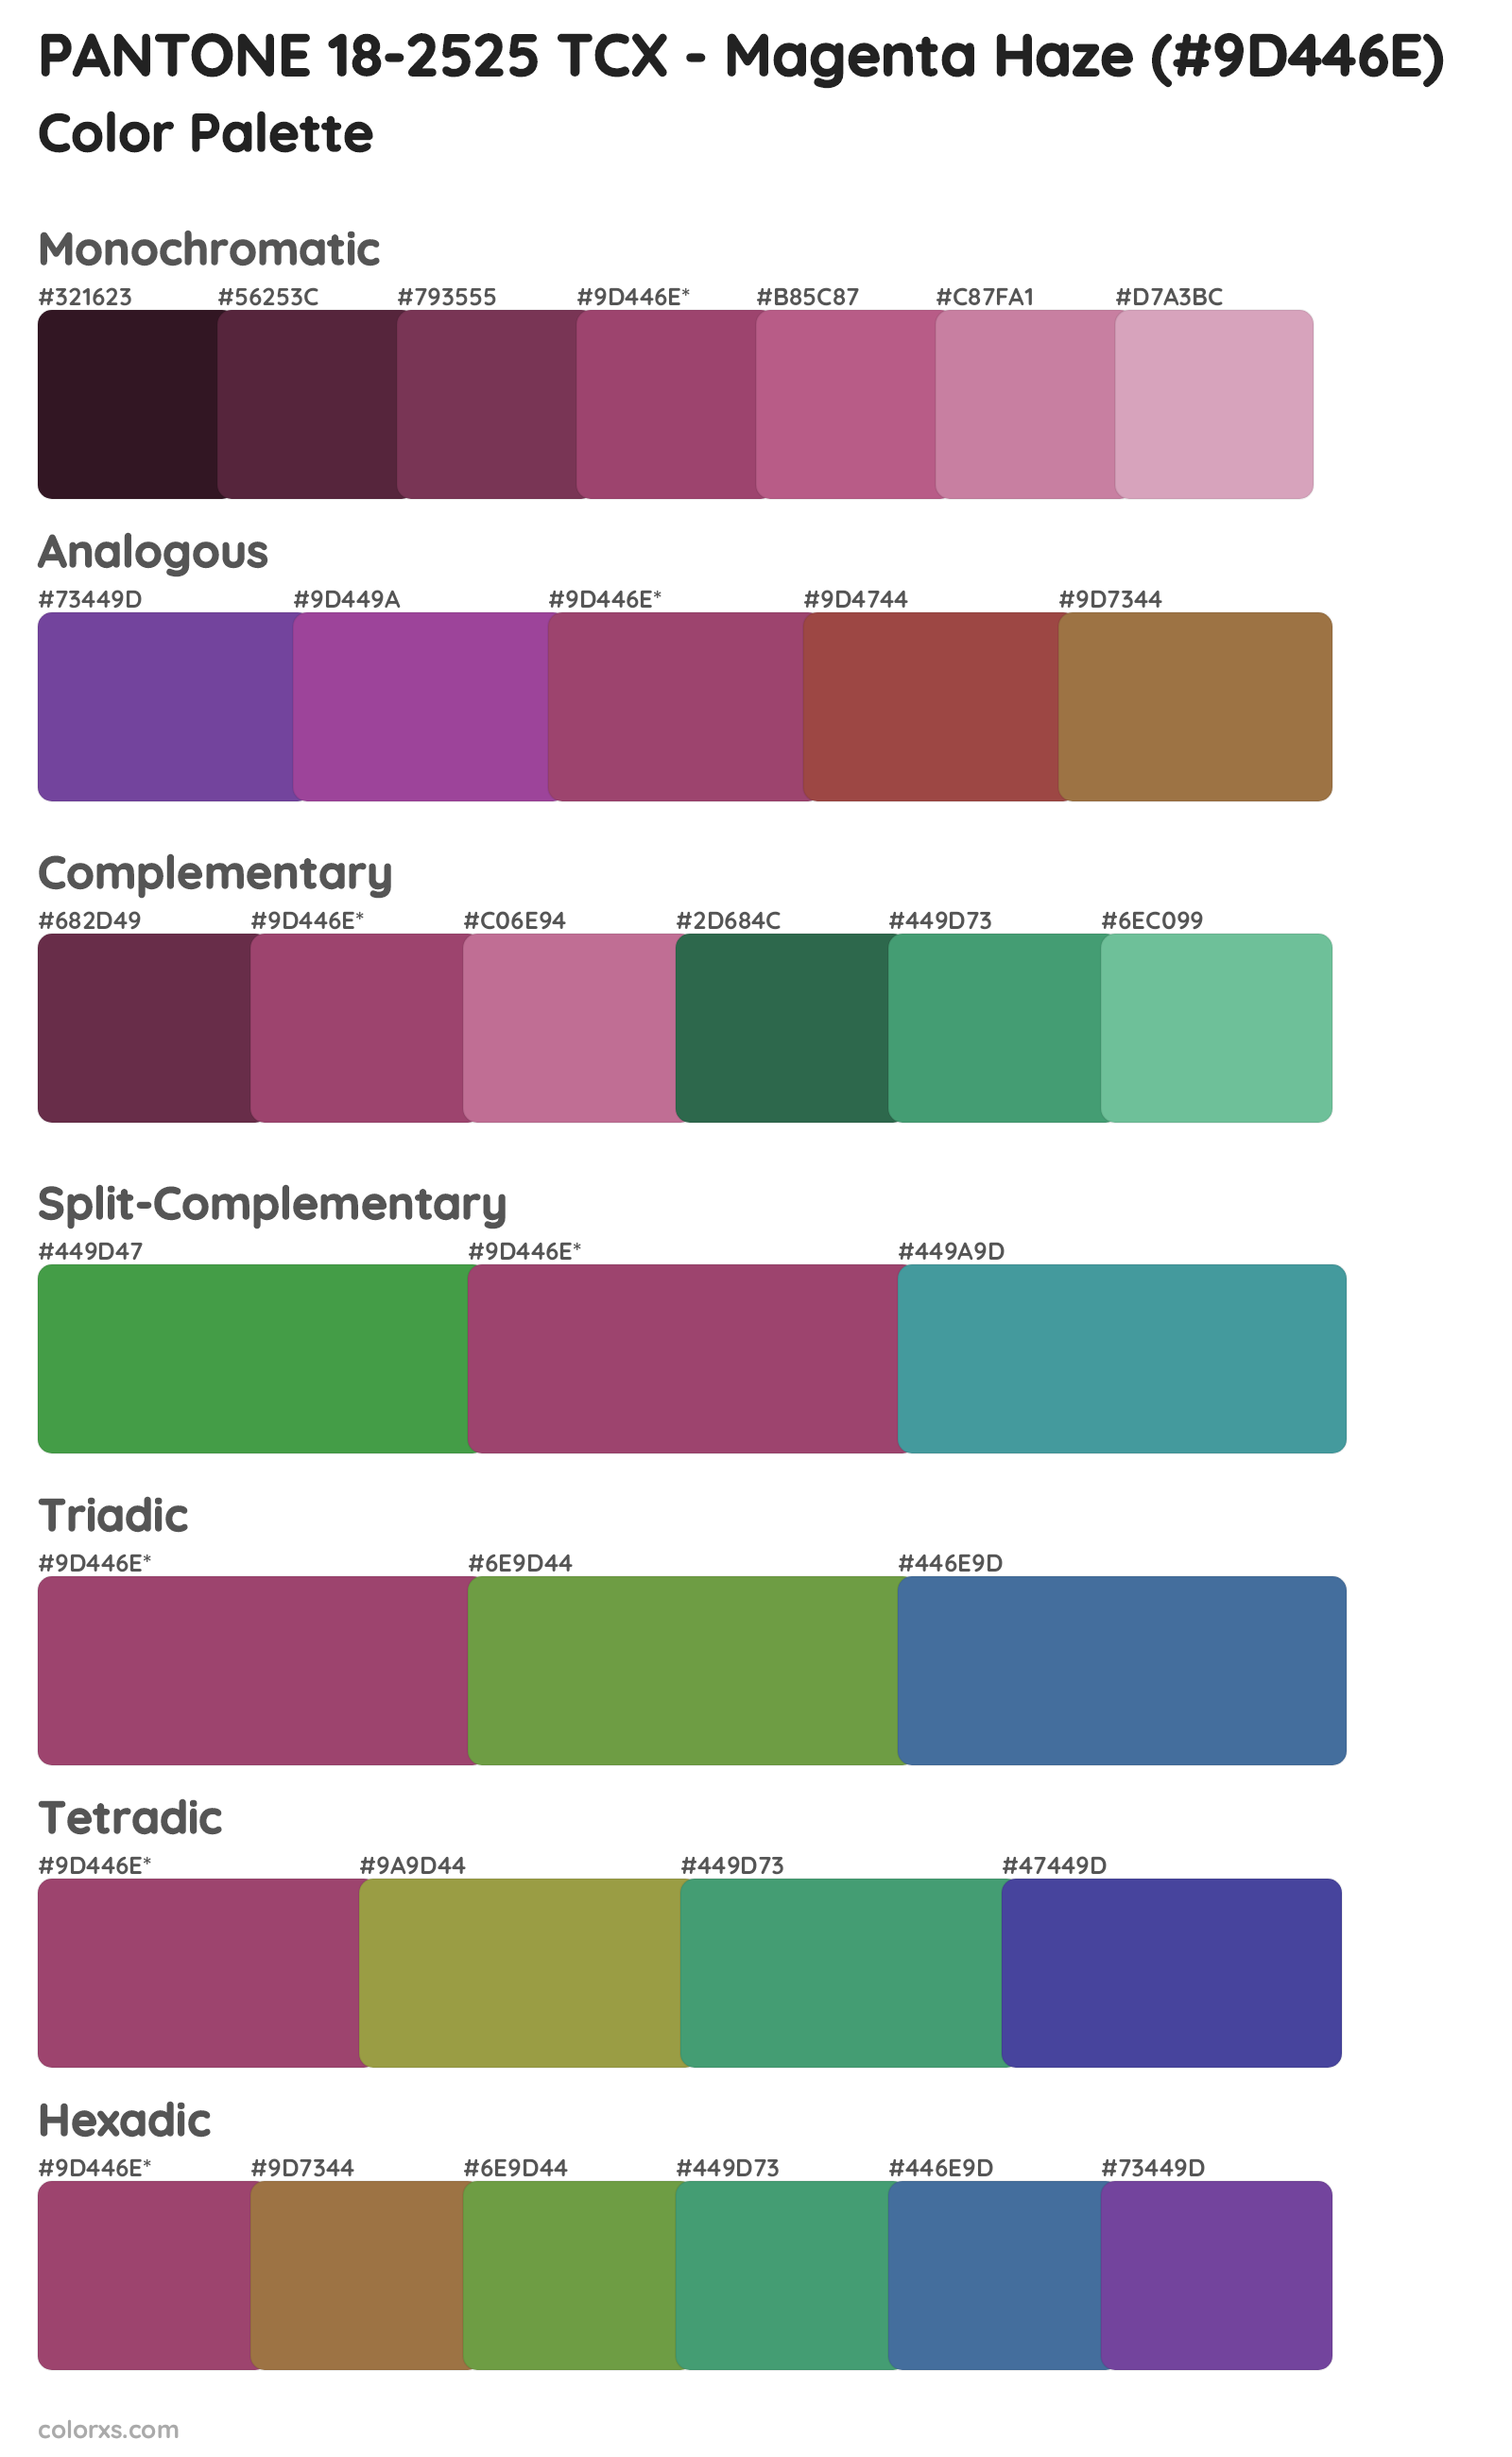 PANTONE 18-2525 TCX - Magenta Haze Color Scheme Palettes